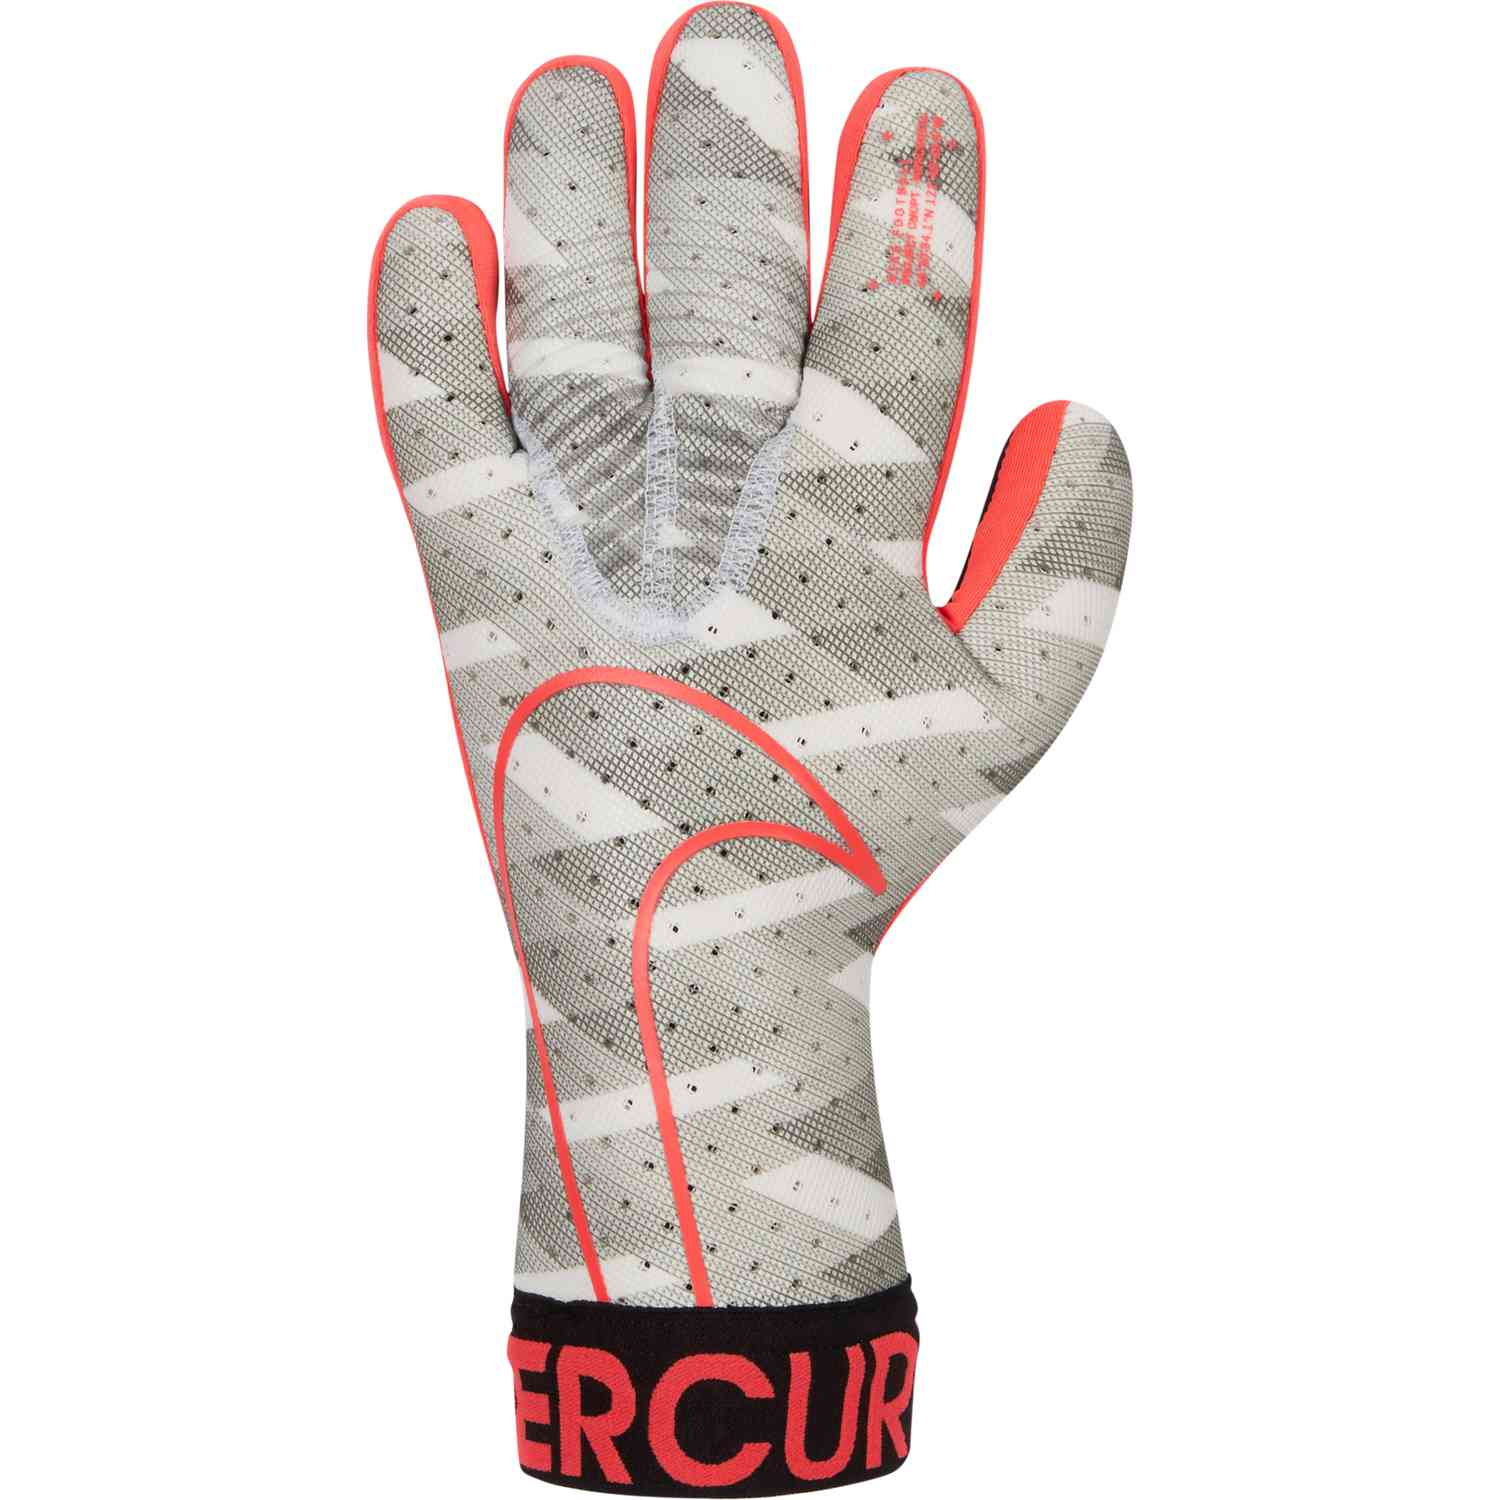 nike mercurial touch elite gloves amazon